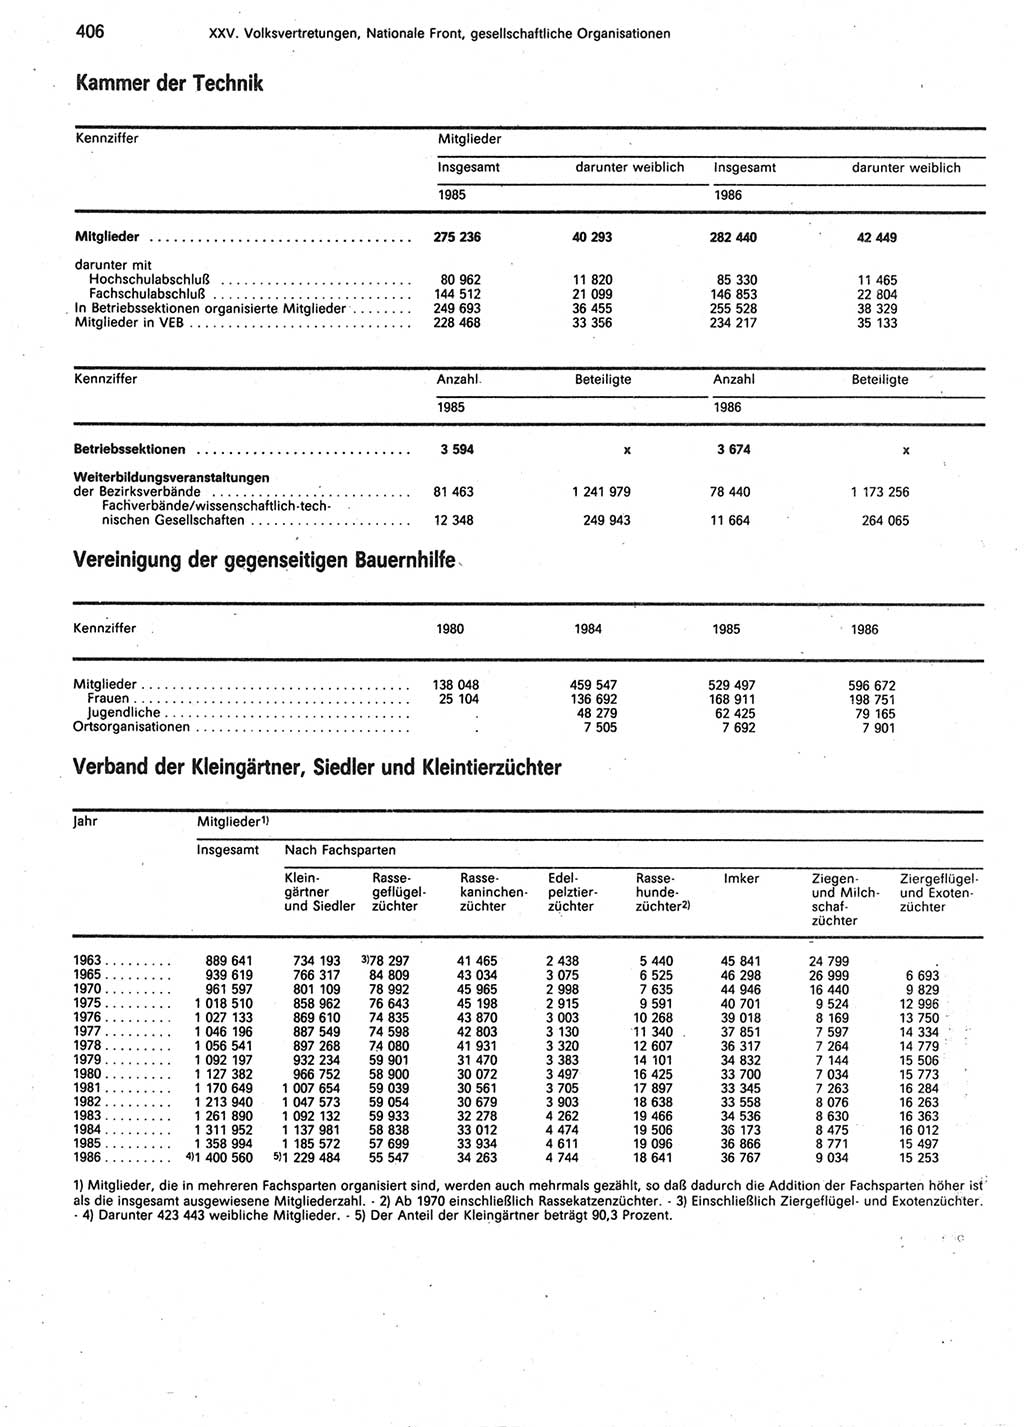 Statistisches Jahrbuch der Deutschen Demokratischen Republik (DDR) 1987, Seite 406 (Stat. Jb. DDR 1987, S. 406)